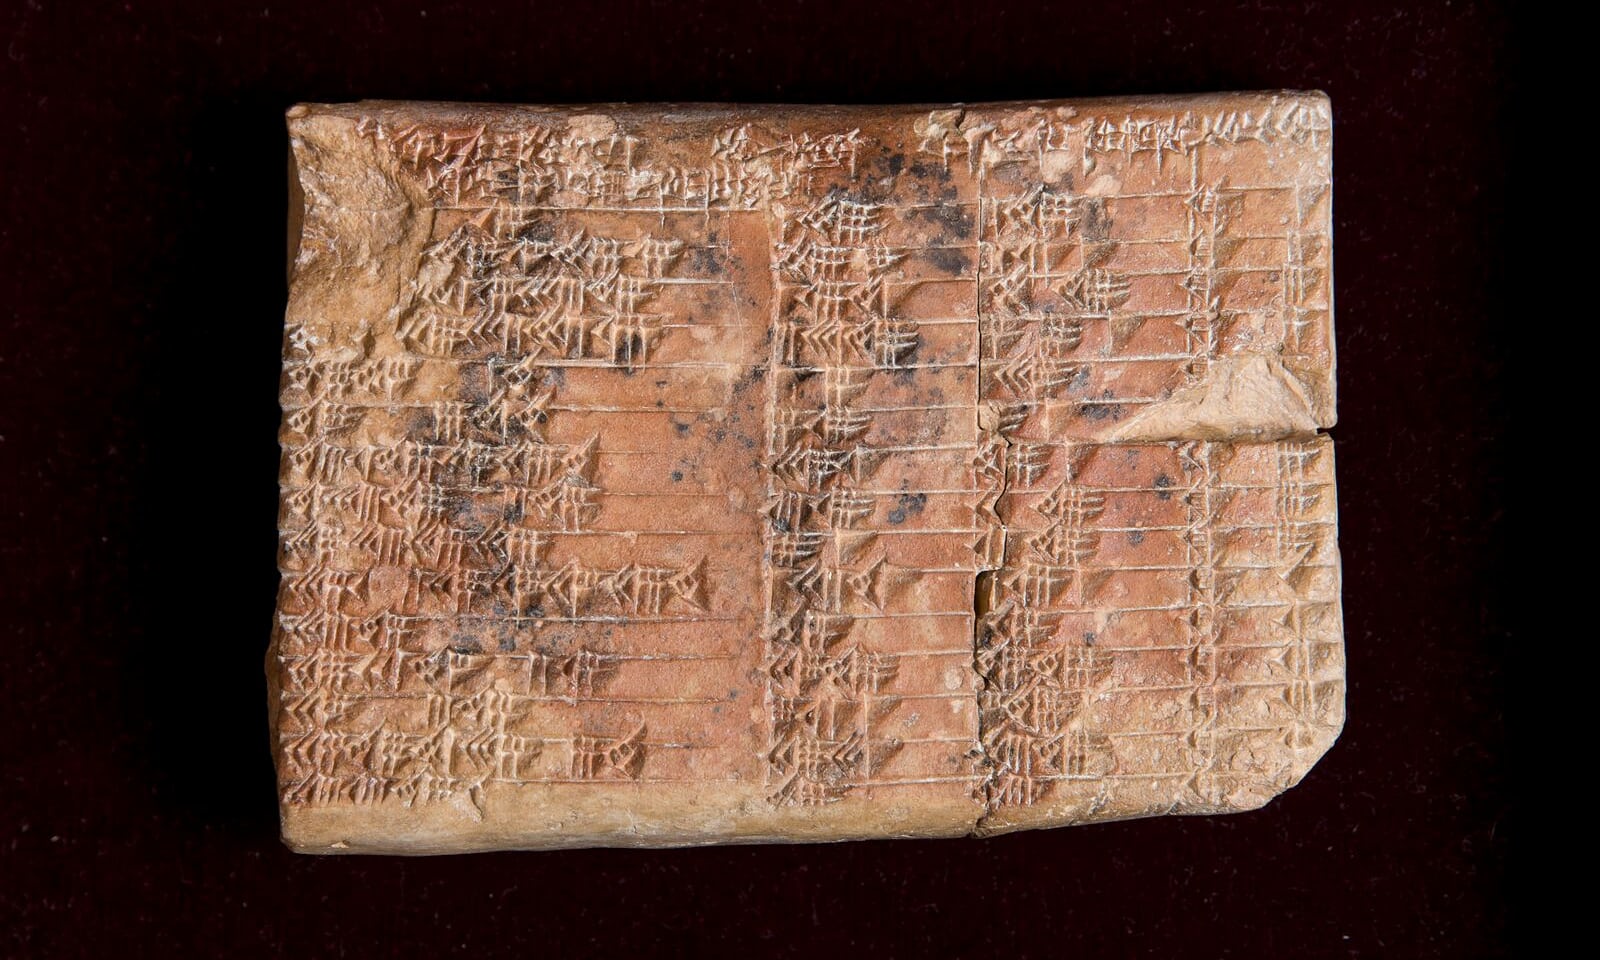 Tablilla Plimpton 322 usada por babilonios